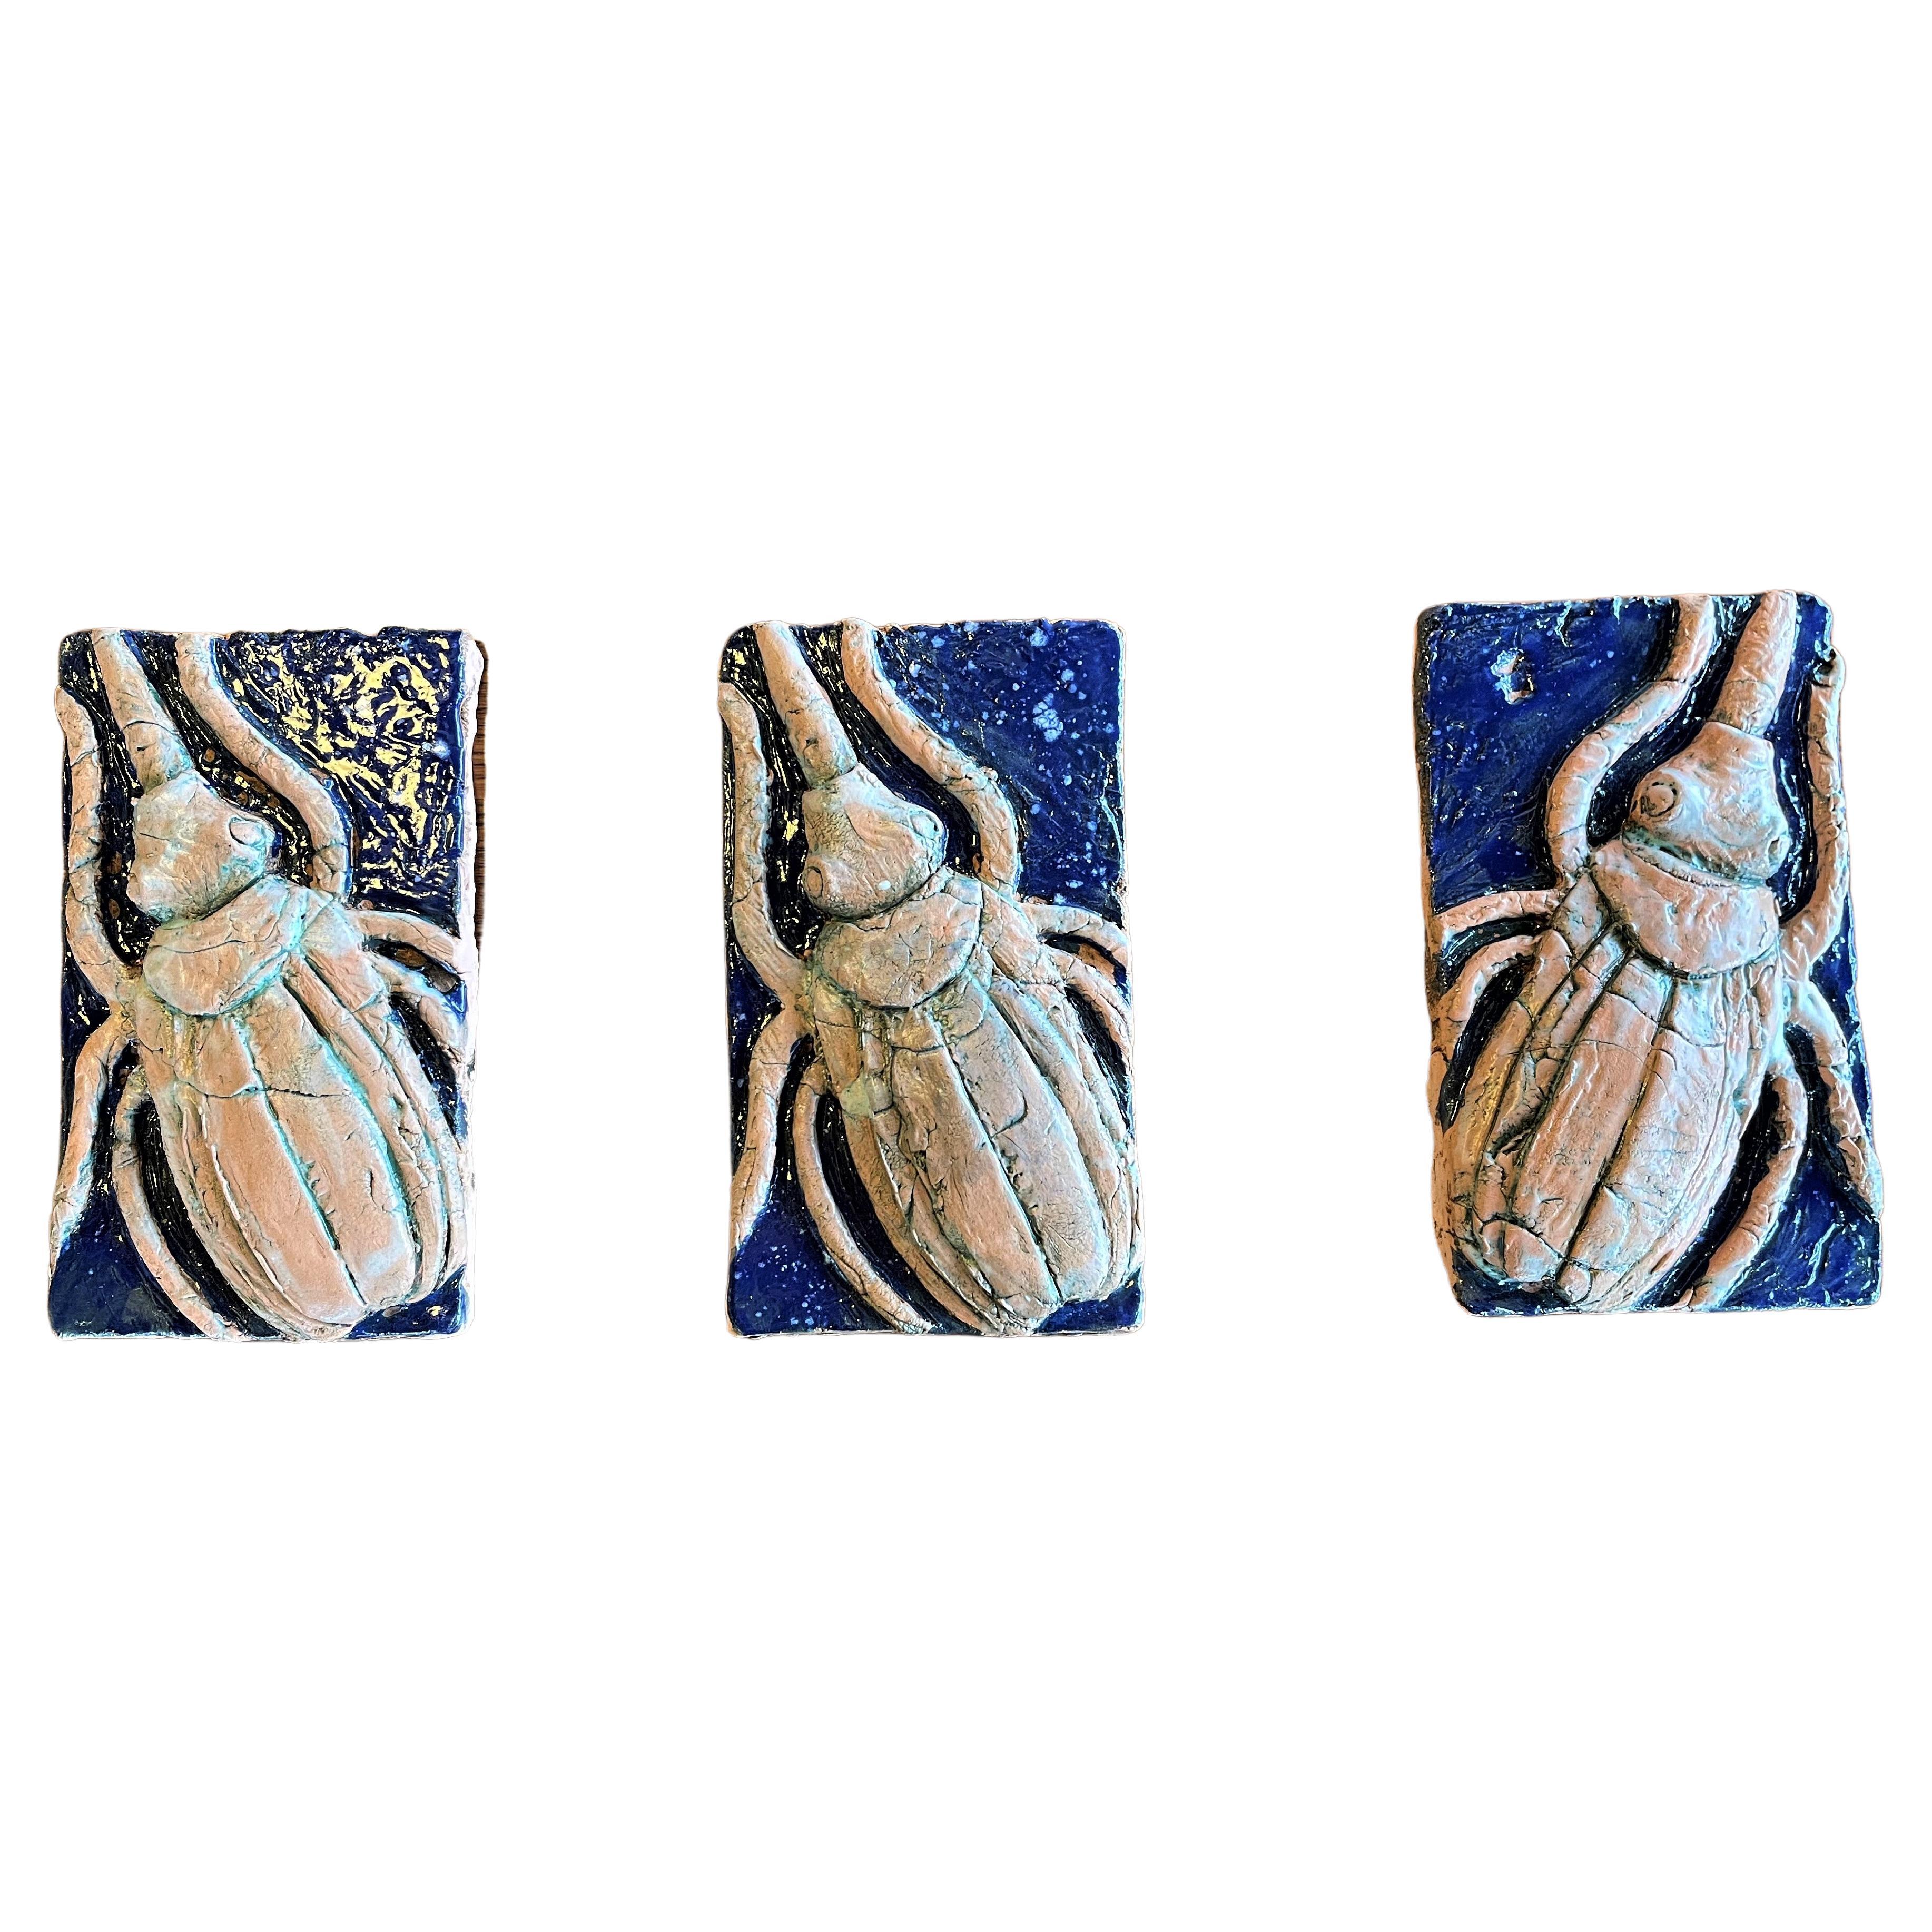 Maßgefertigte Skarabäus-Wandfliesen: handgefertigte und handglasierte Keramik – 3er-Set